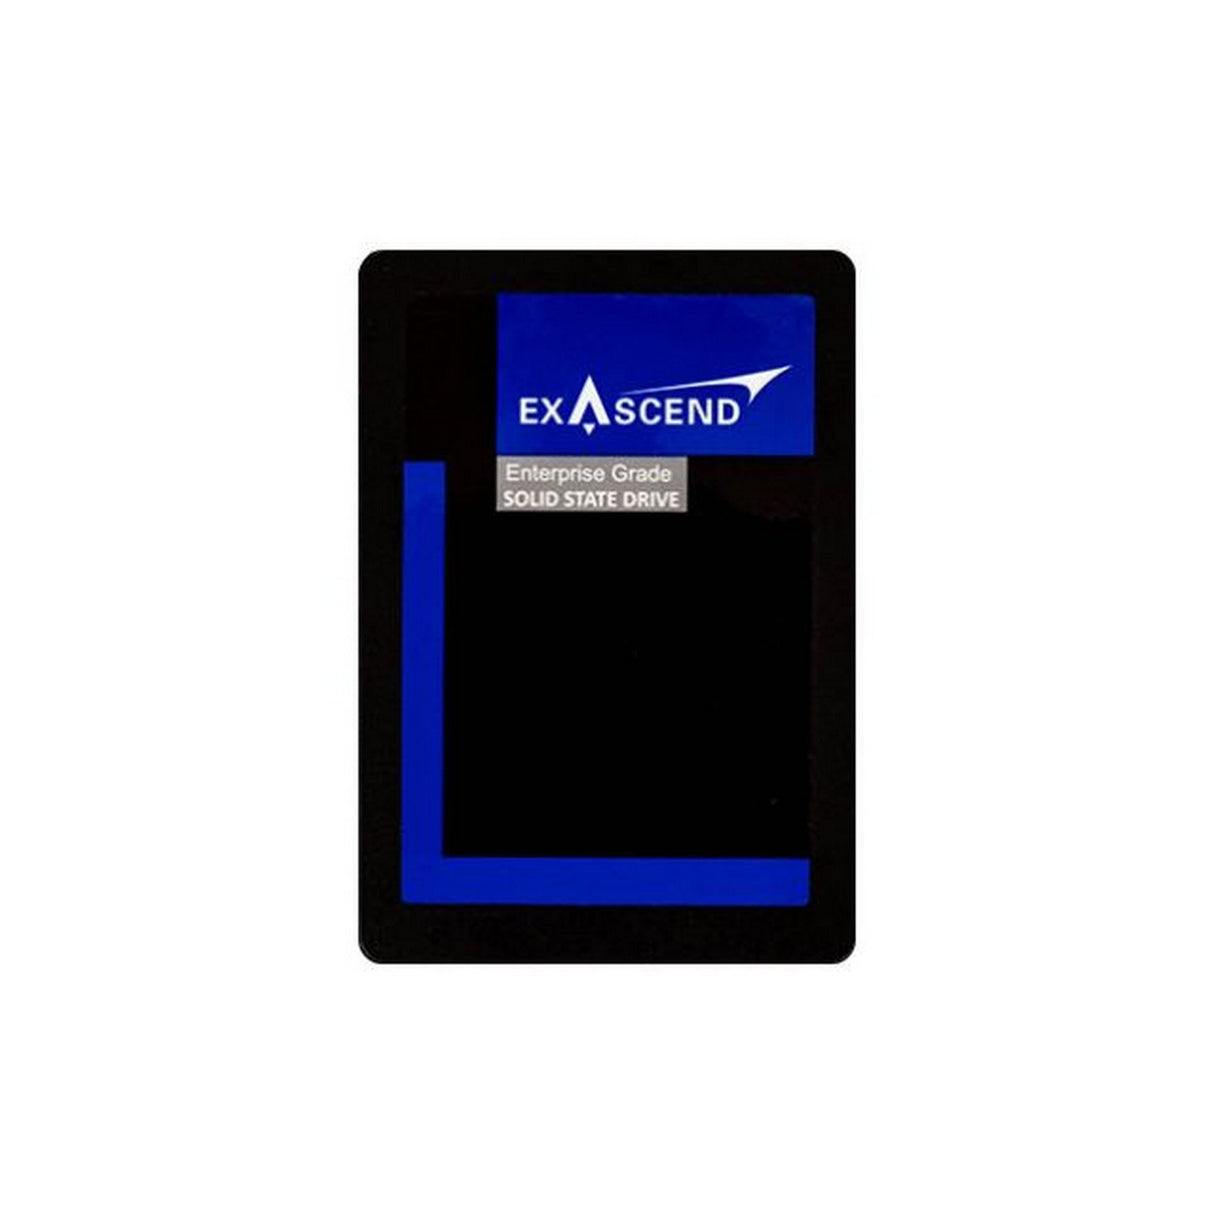 Exascend 7680GB PE3 Series U.2 SSD Drive